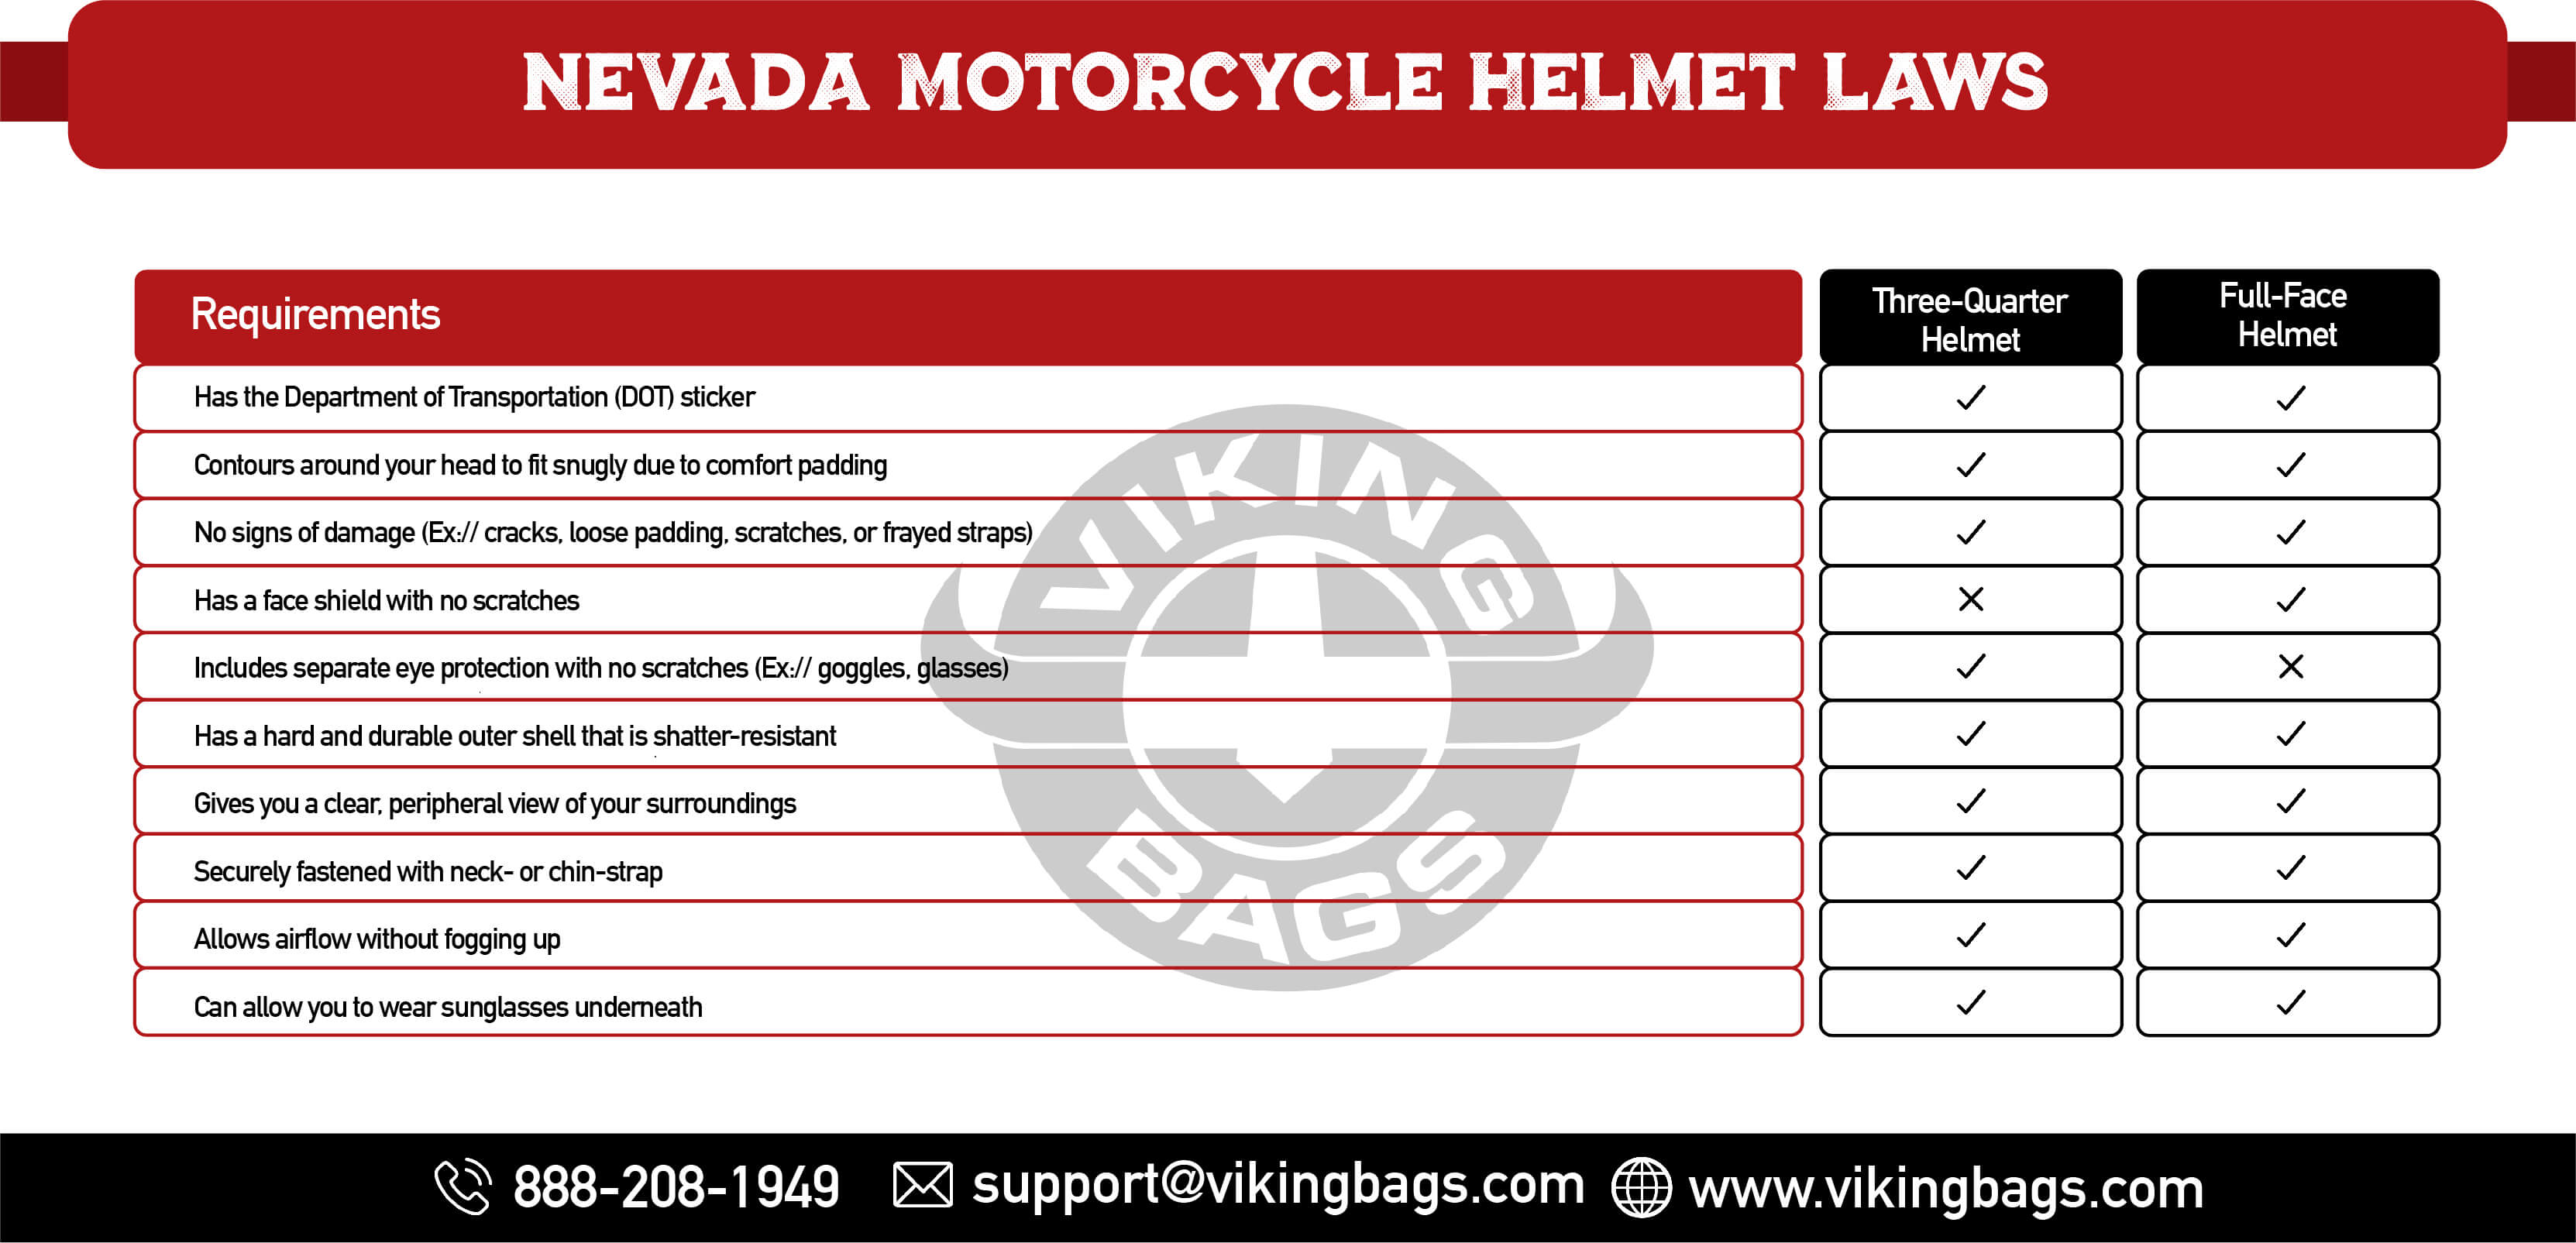 Nevada Motorcycle Helmet Laws